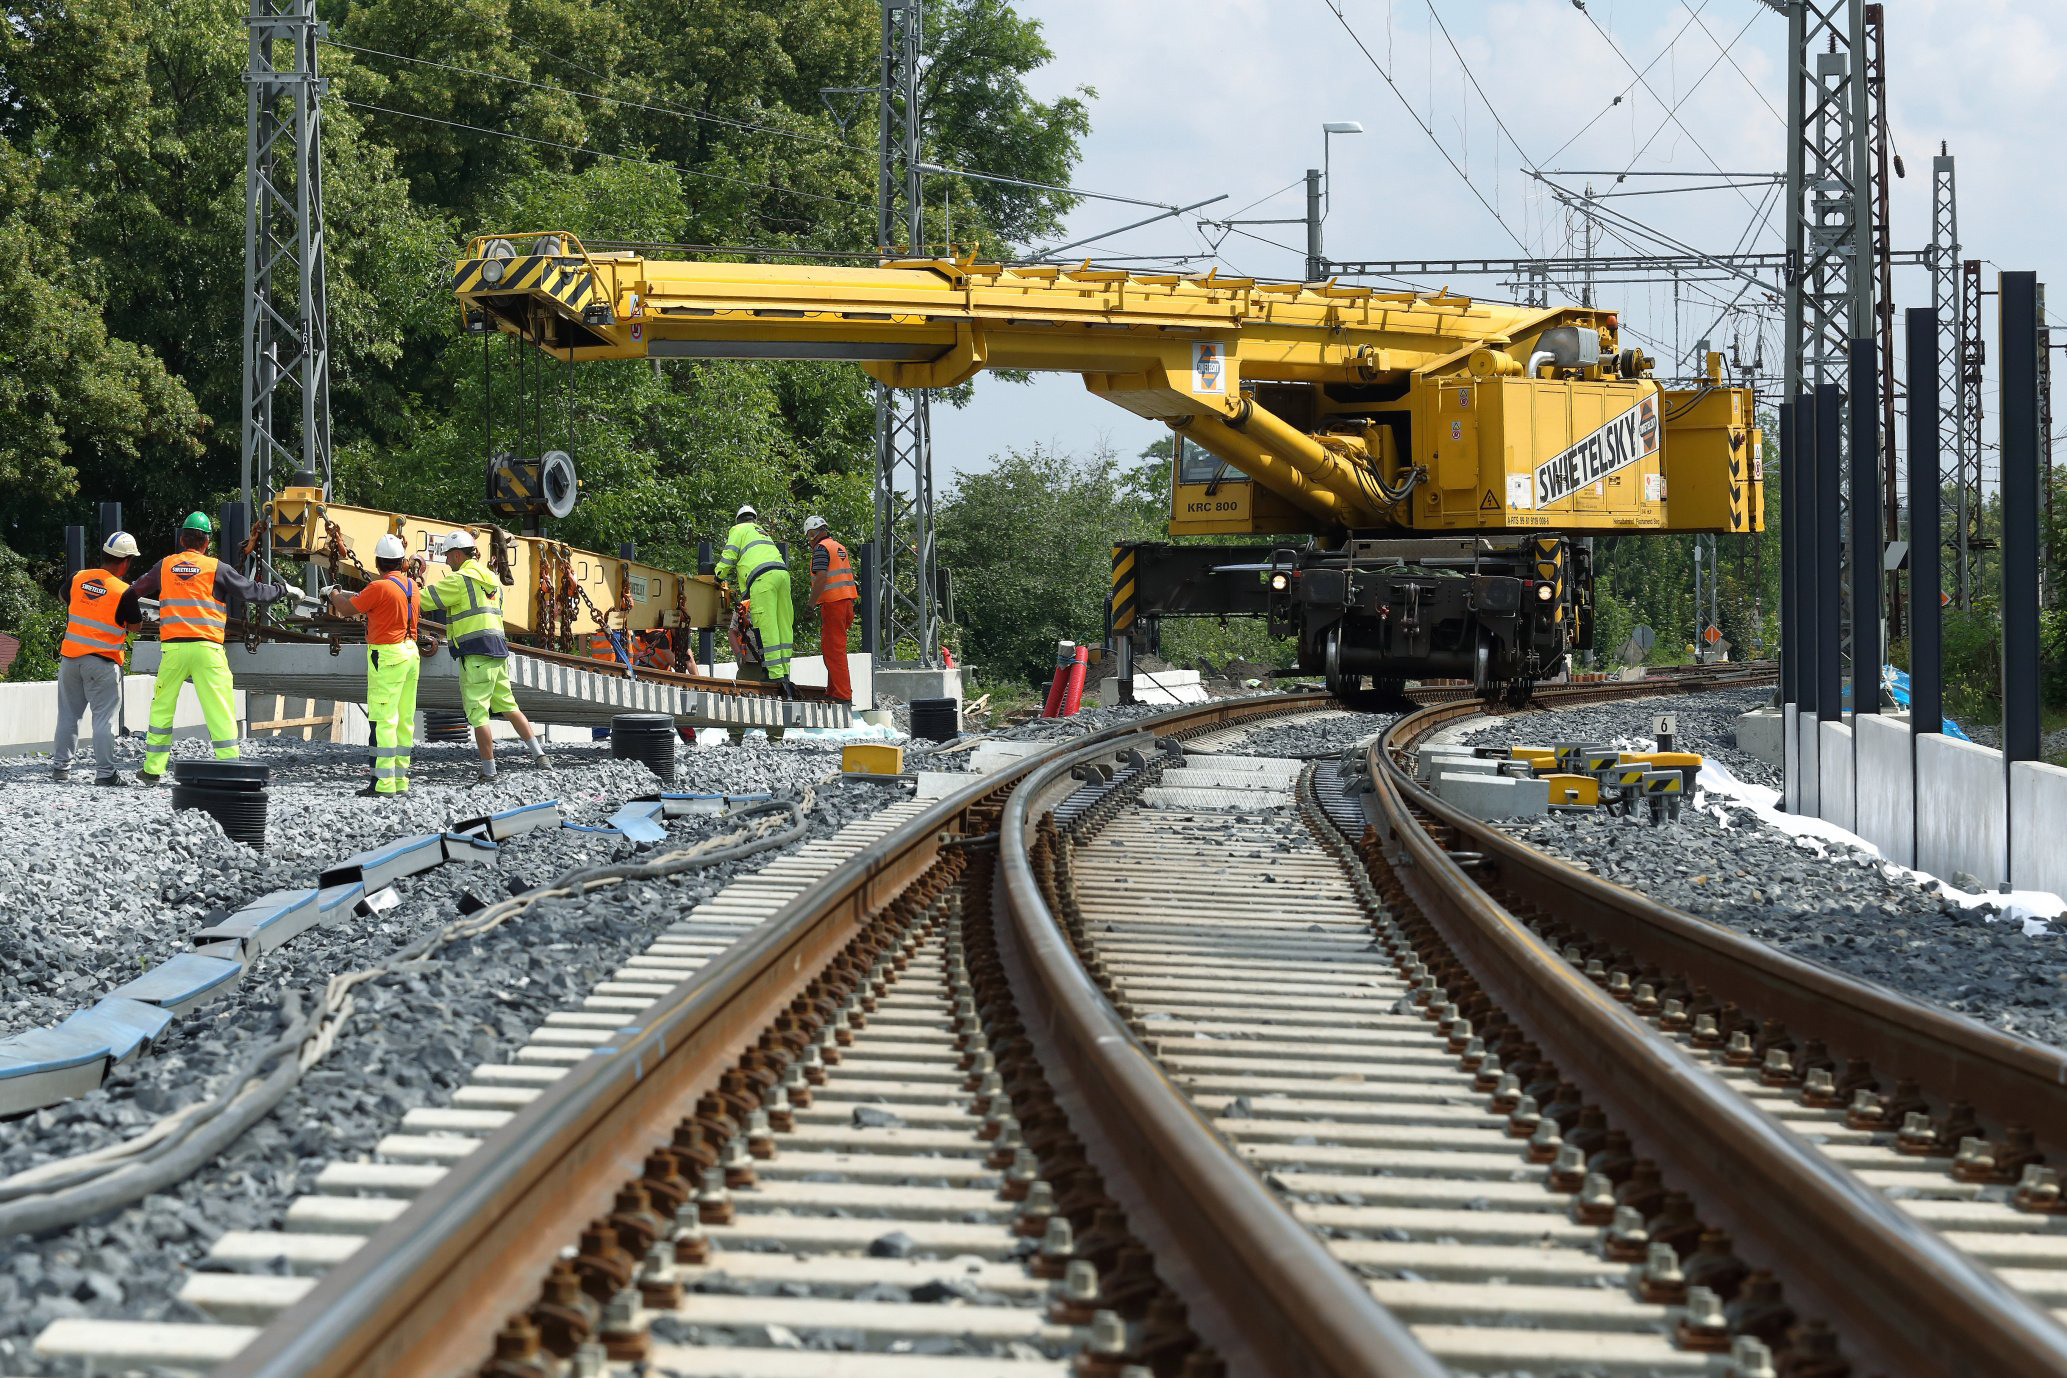 Obnova železniční stanice, Čelákovice - Vasútépítés